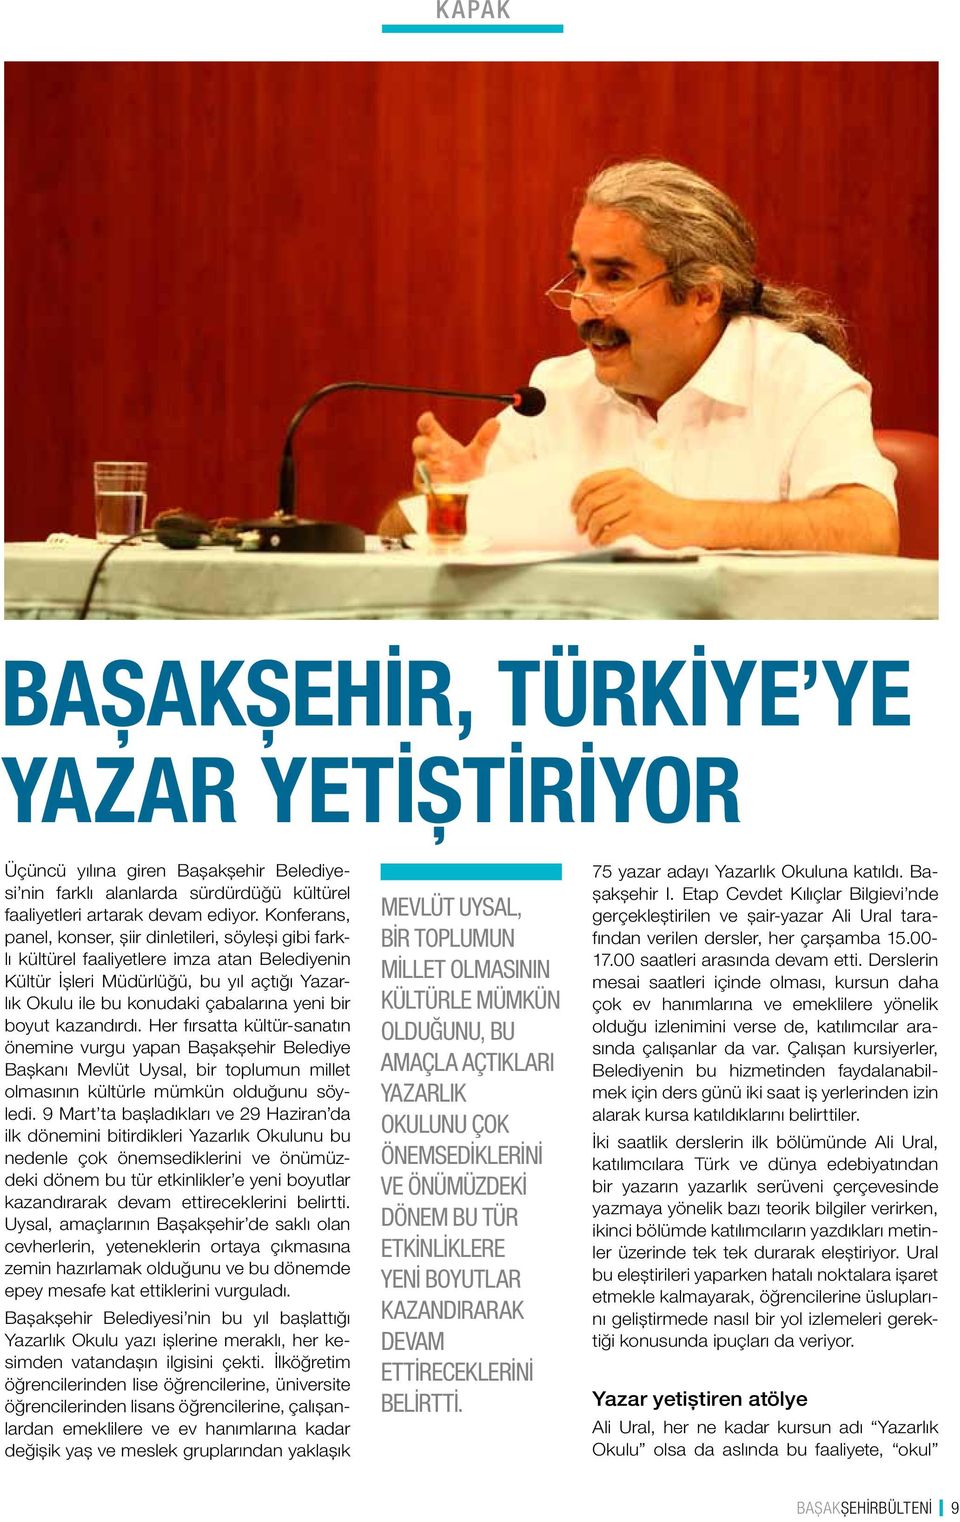 boyut kazandırdı. Her fırsatta kültür-sanatın önemine vurgu yapan Başakşehir Belediye Başkanı Mevlüt Uysal, bir toplumun millet olmasının kültürle mümkün olduğunu söyledi.